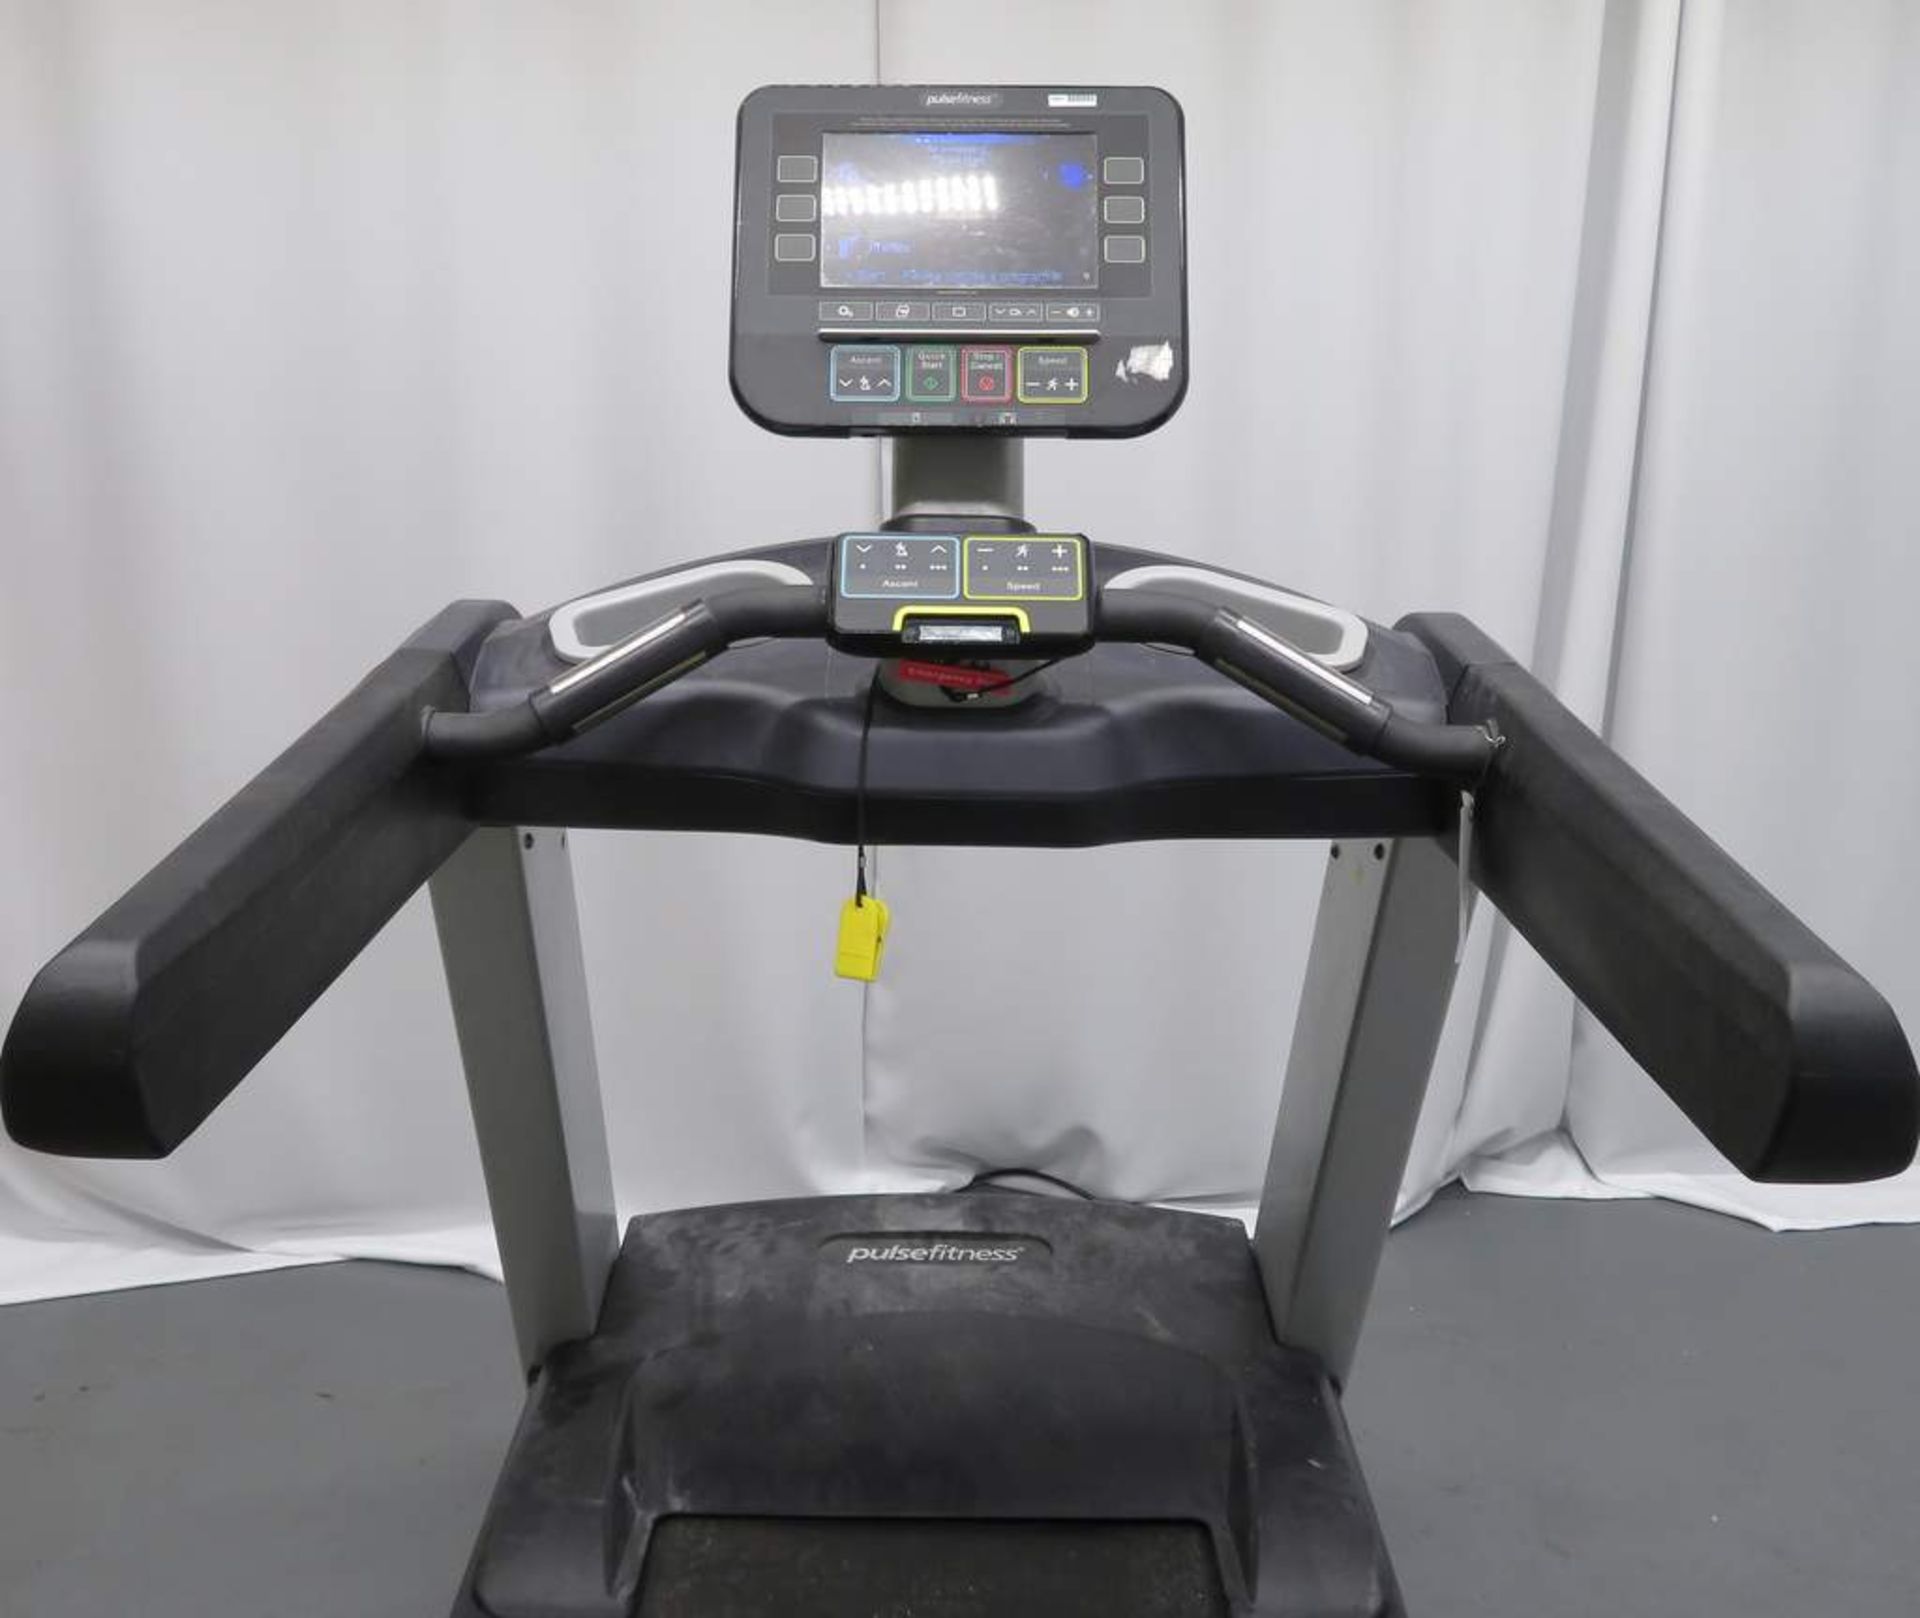 Pulse Fitness, Model: 260G, Treadmill. - Image 4 of 5